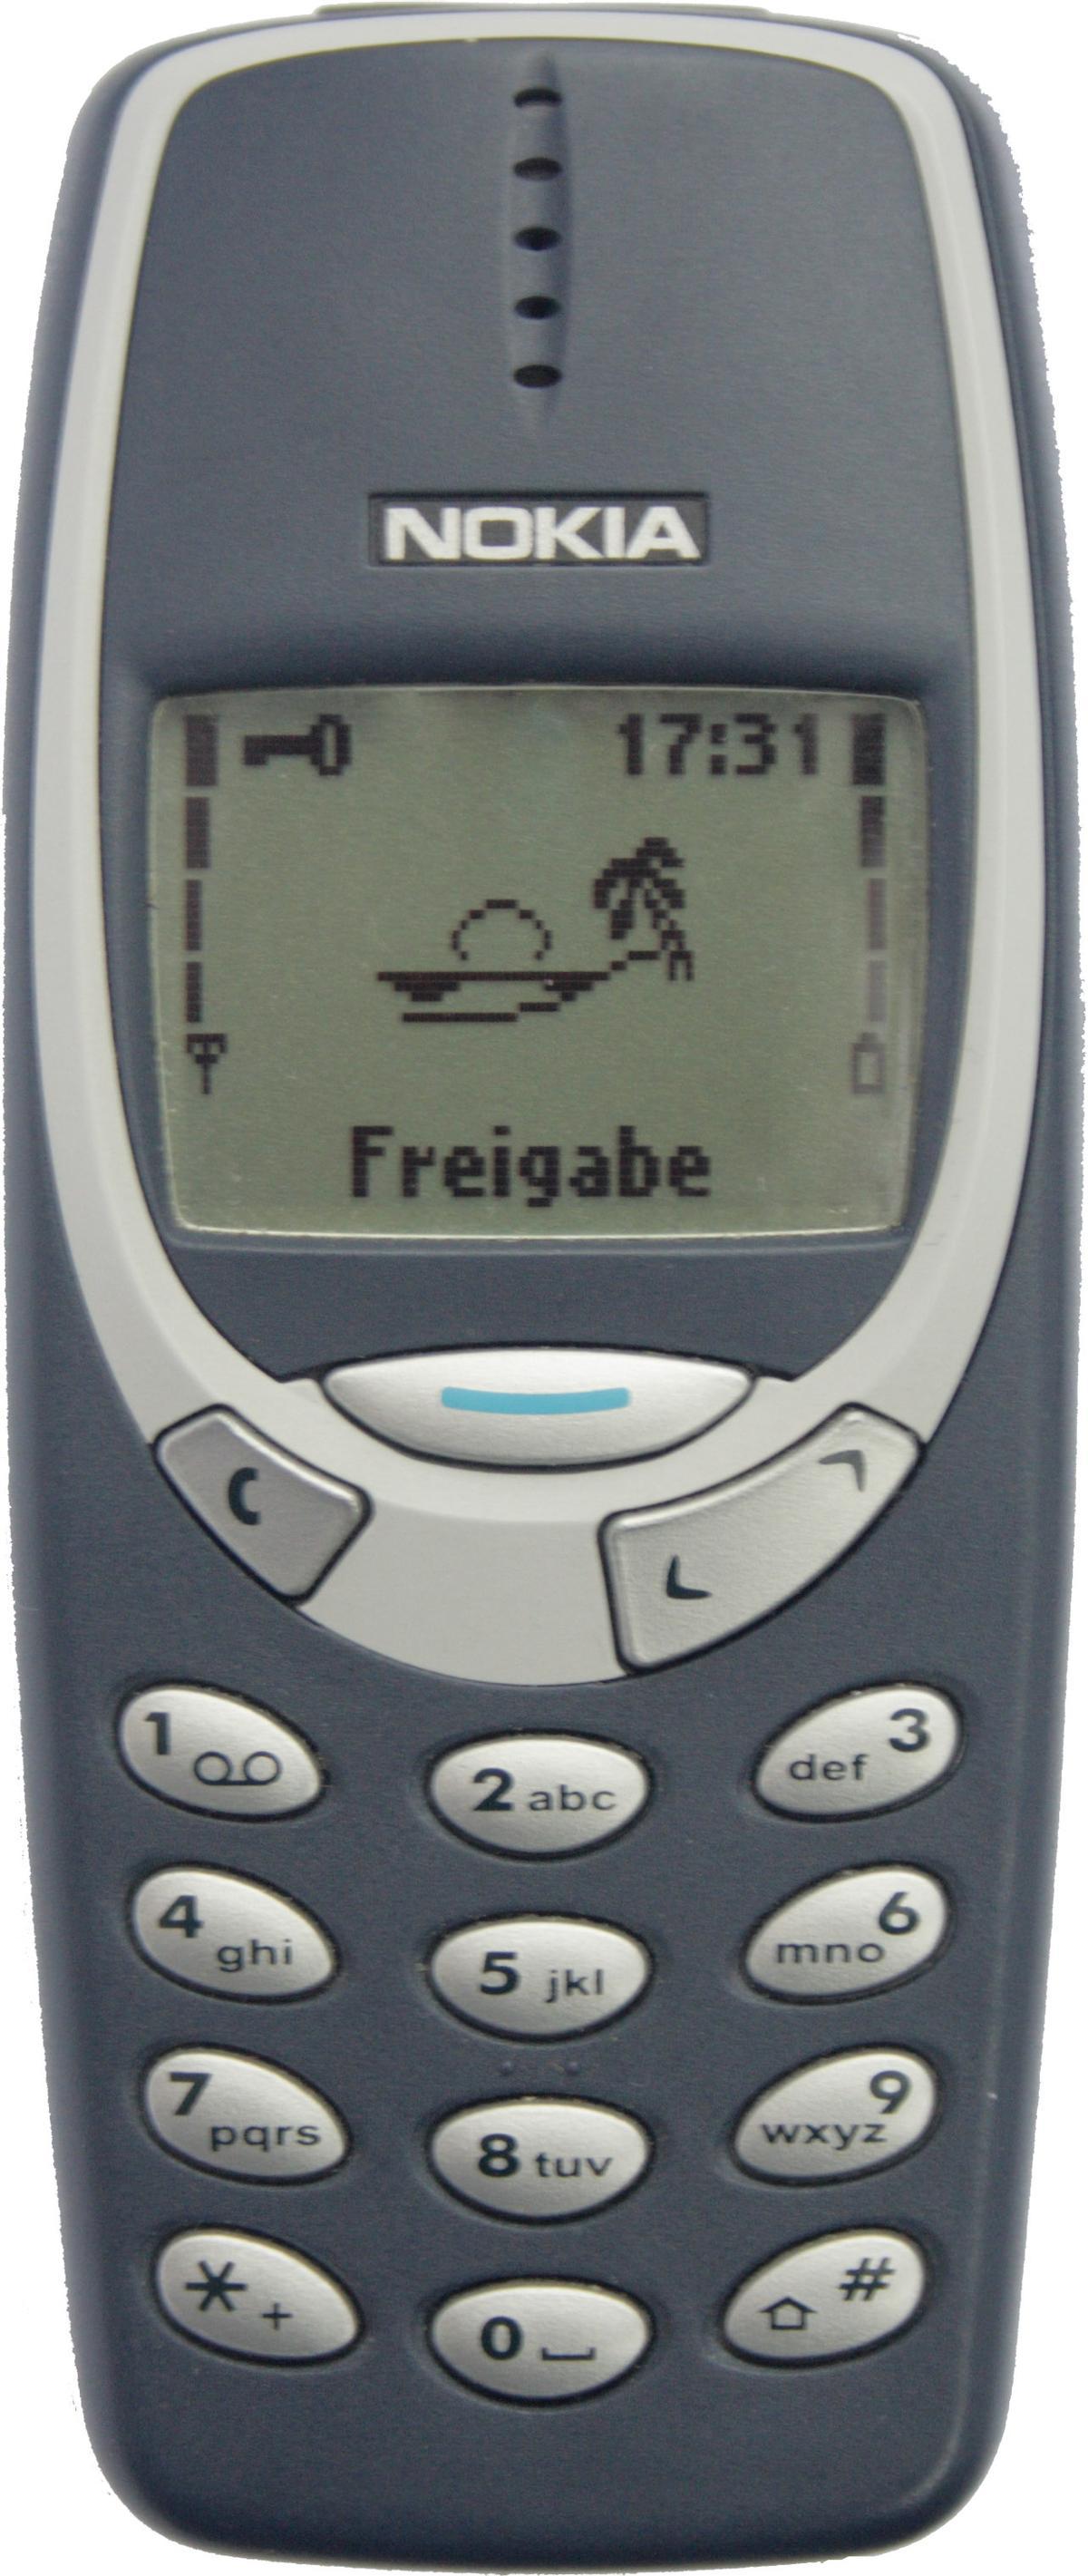 Teléfono Nokia 3310 en color azul